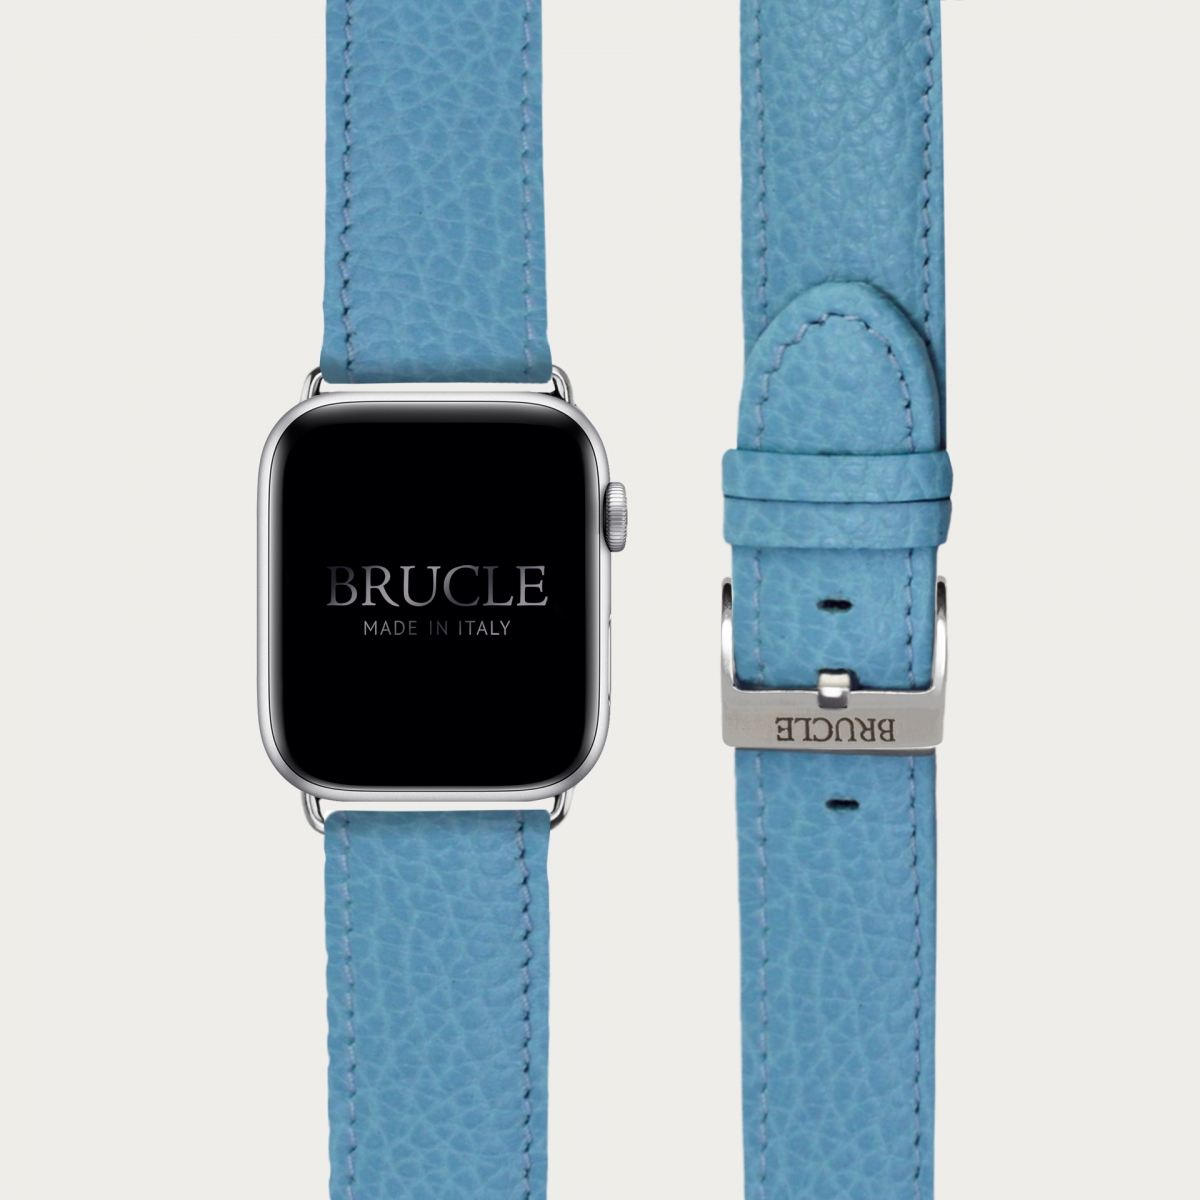 Bracelet en cuir pour montre, Apple Watch et Samsung smartwatch, imprimé bleu clair